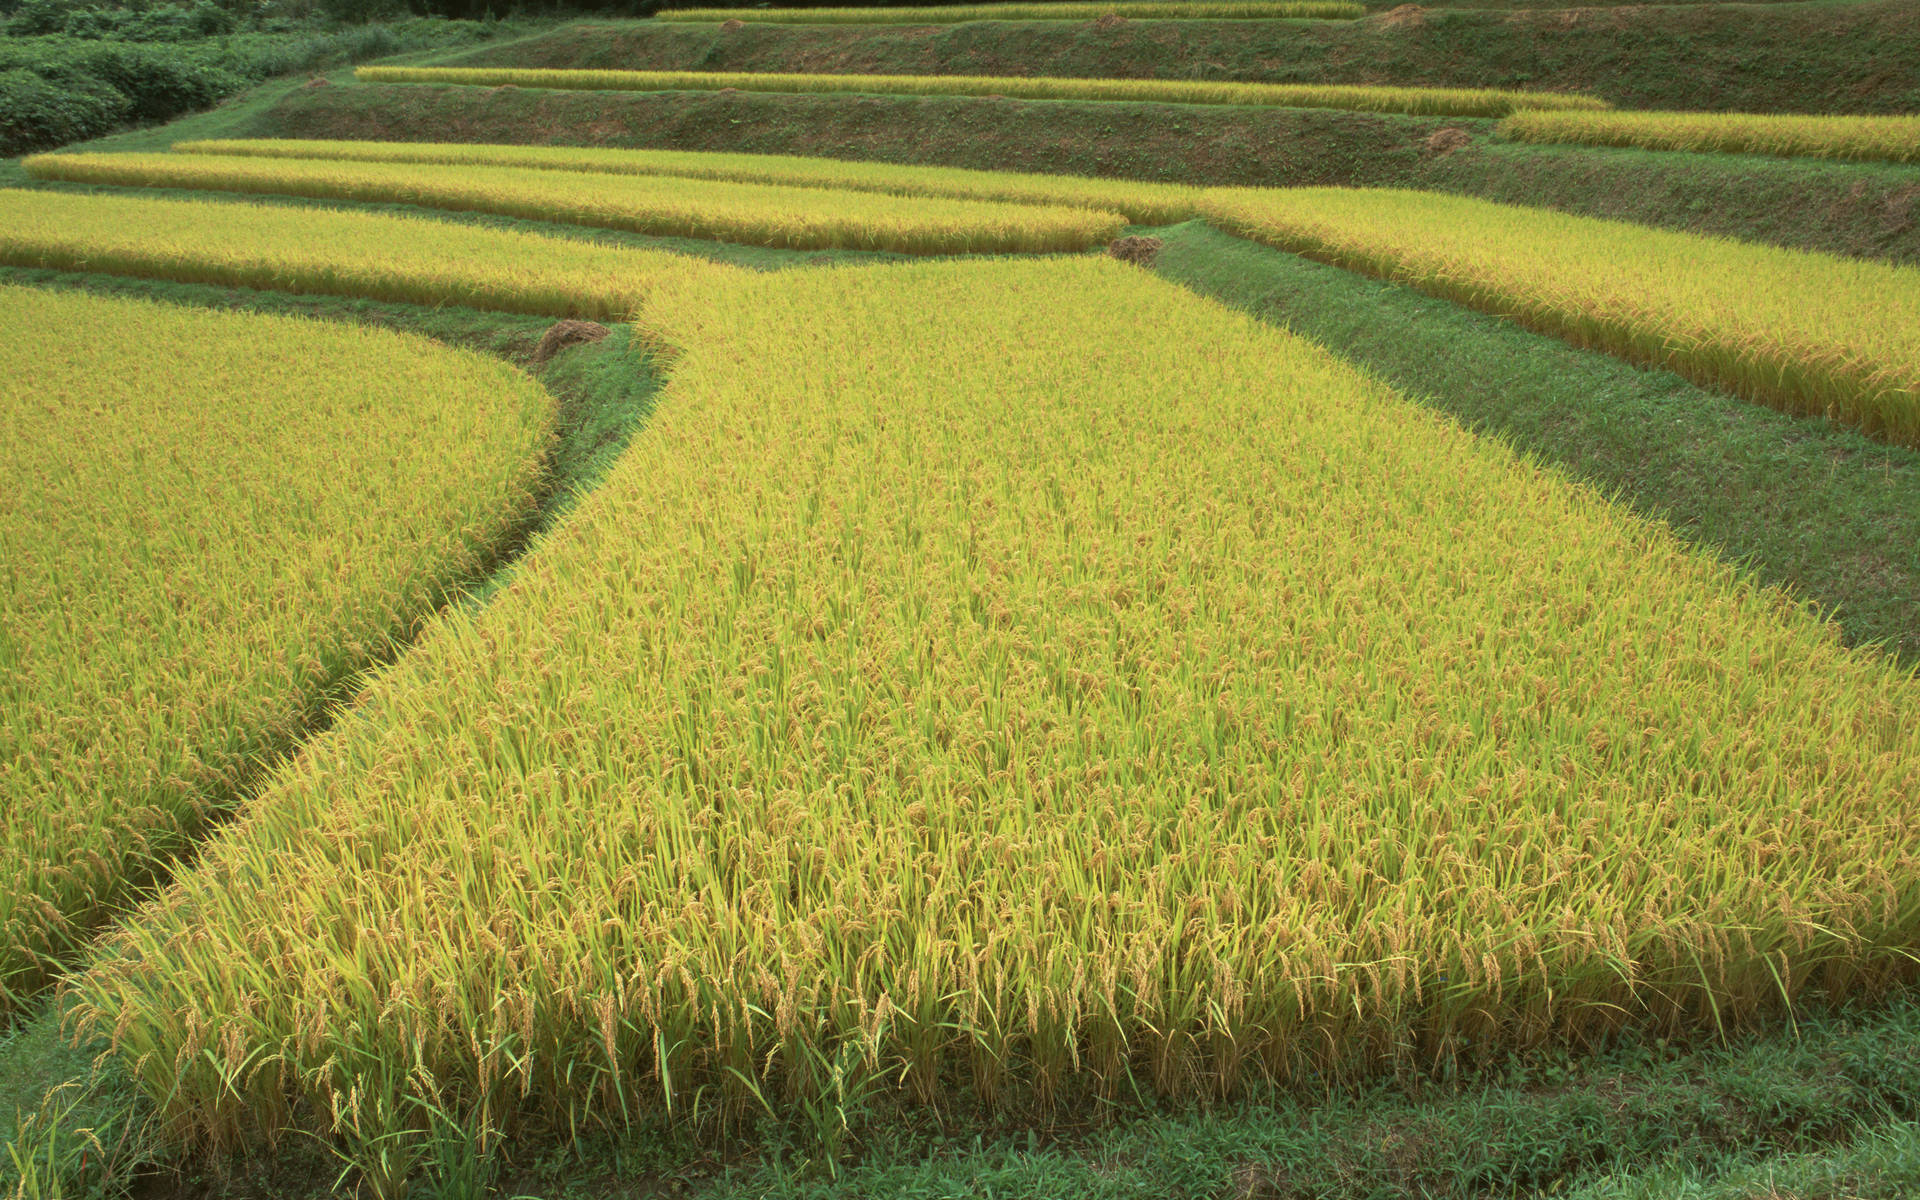 稻田水稻和山摄影图高清摄影大图-千库网